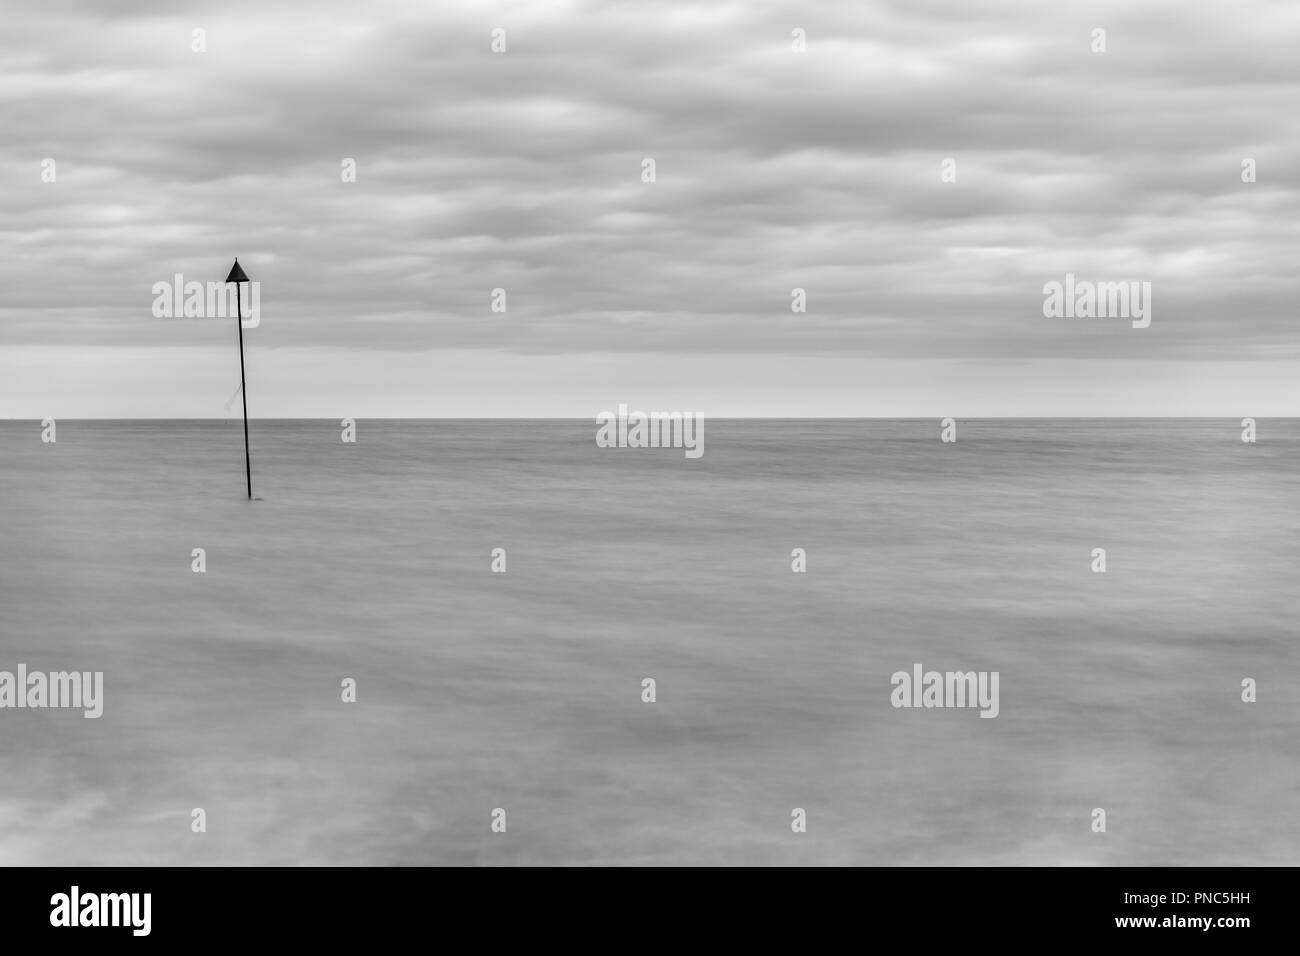 Minimalistischer lange Belichtung Blick aus Meer bei Bawdsey, Suffolk, England. Frame enthält eine Menge leerer Raum Stockfoto